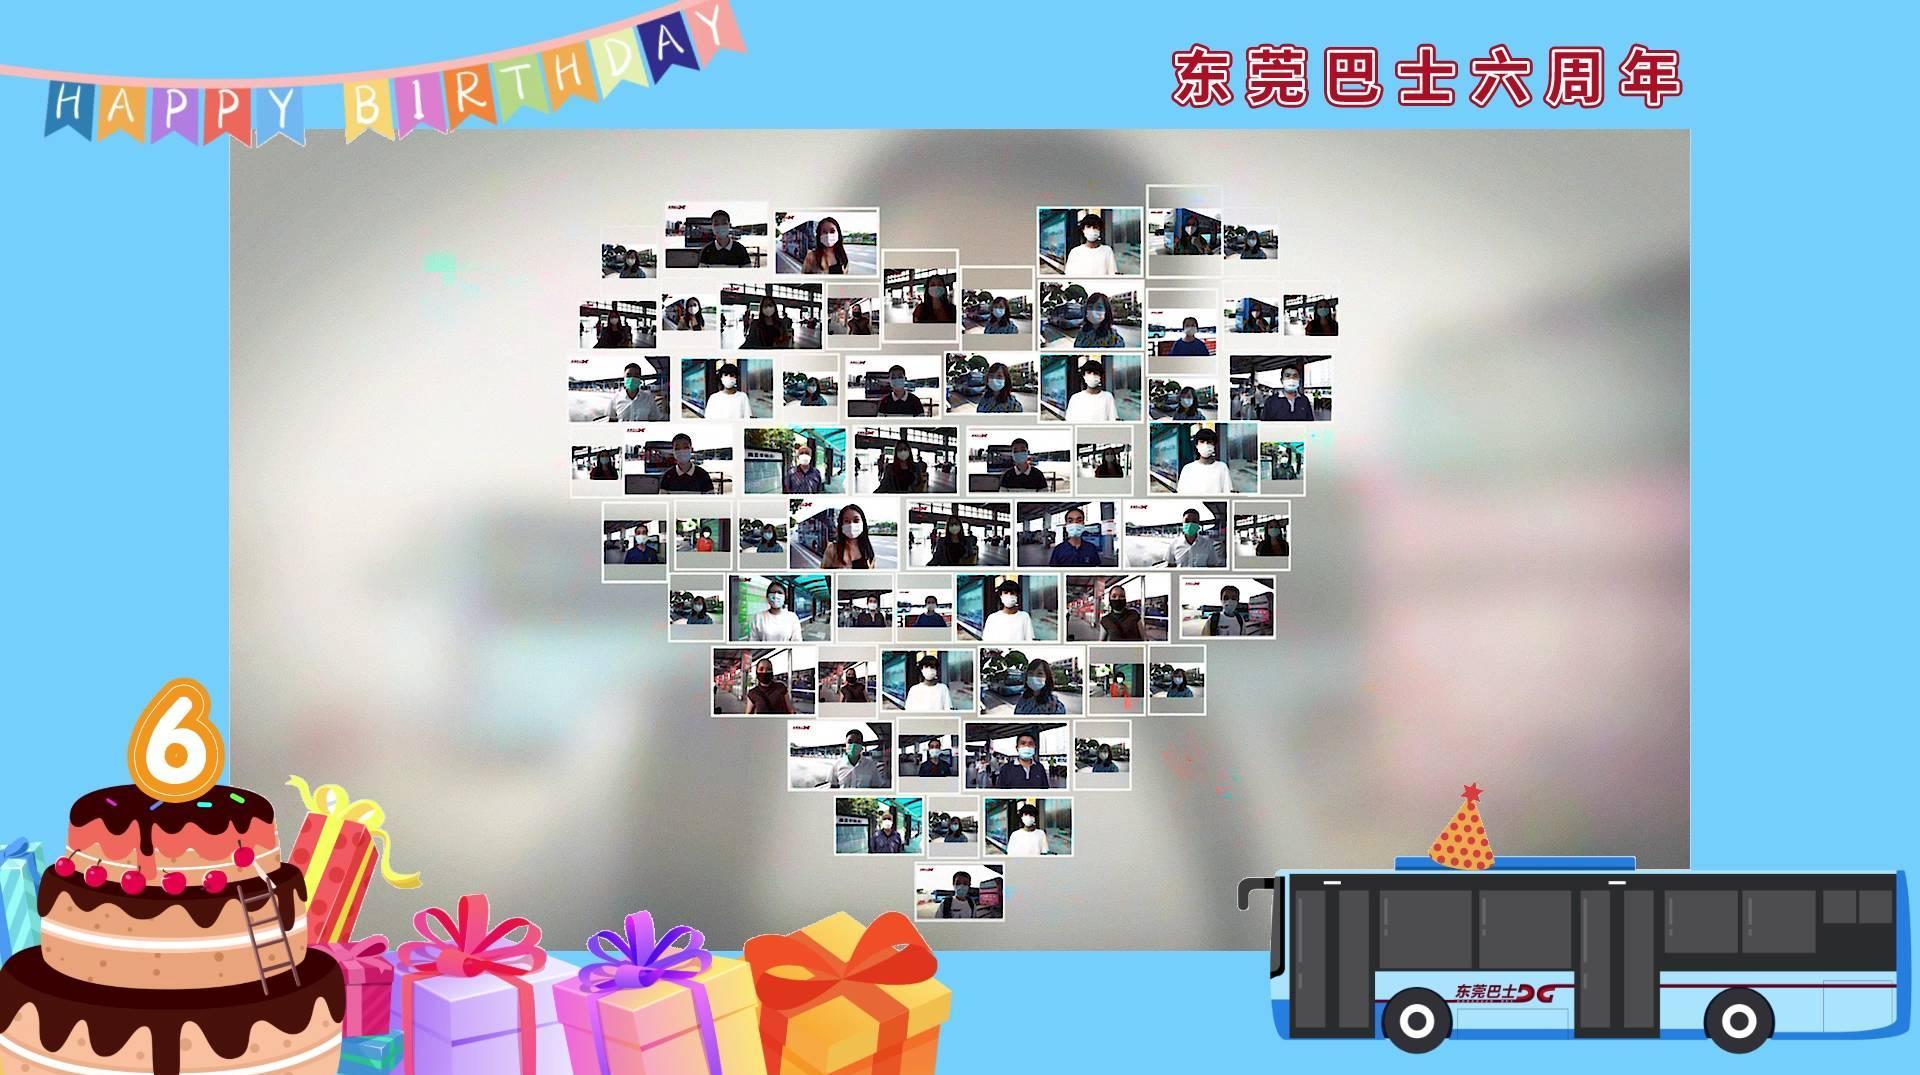 东莞巴士六周年祝福视频